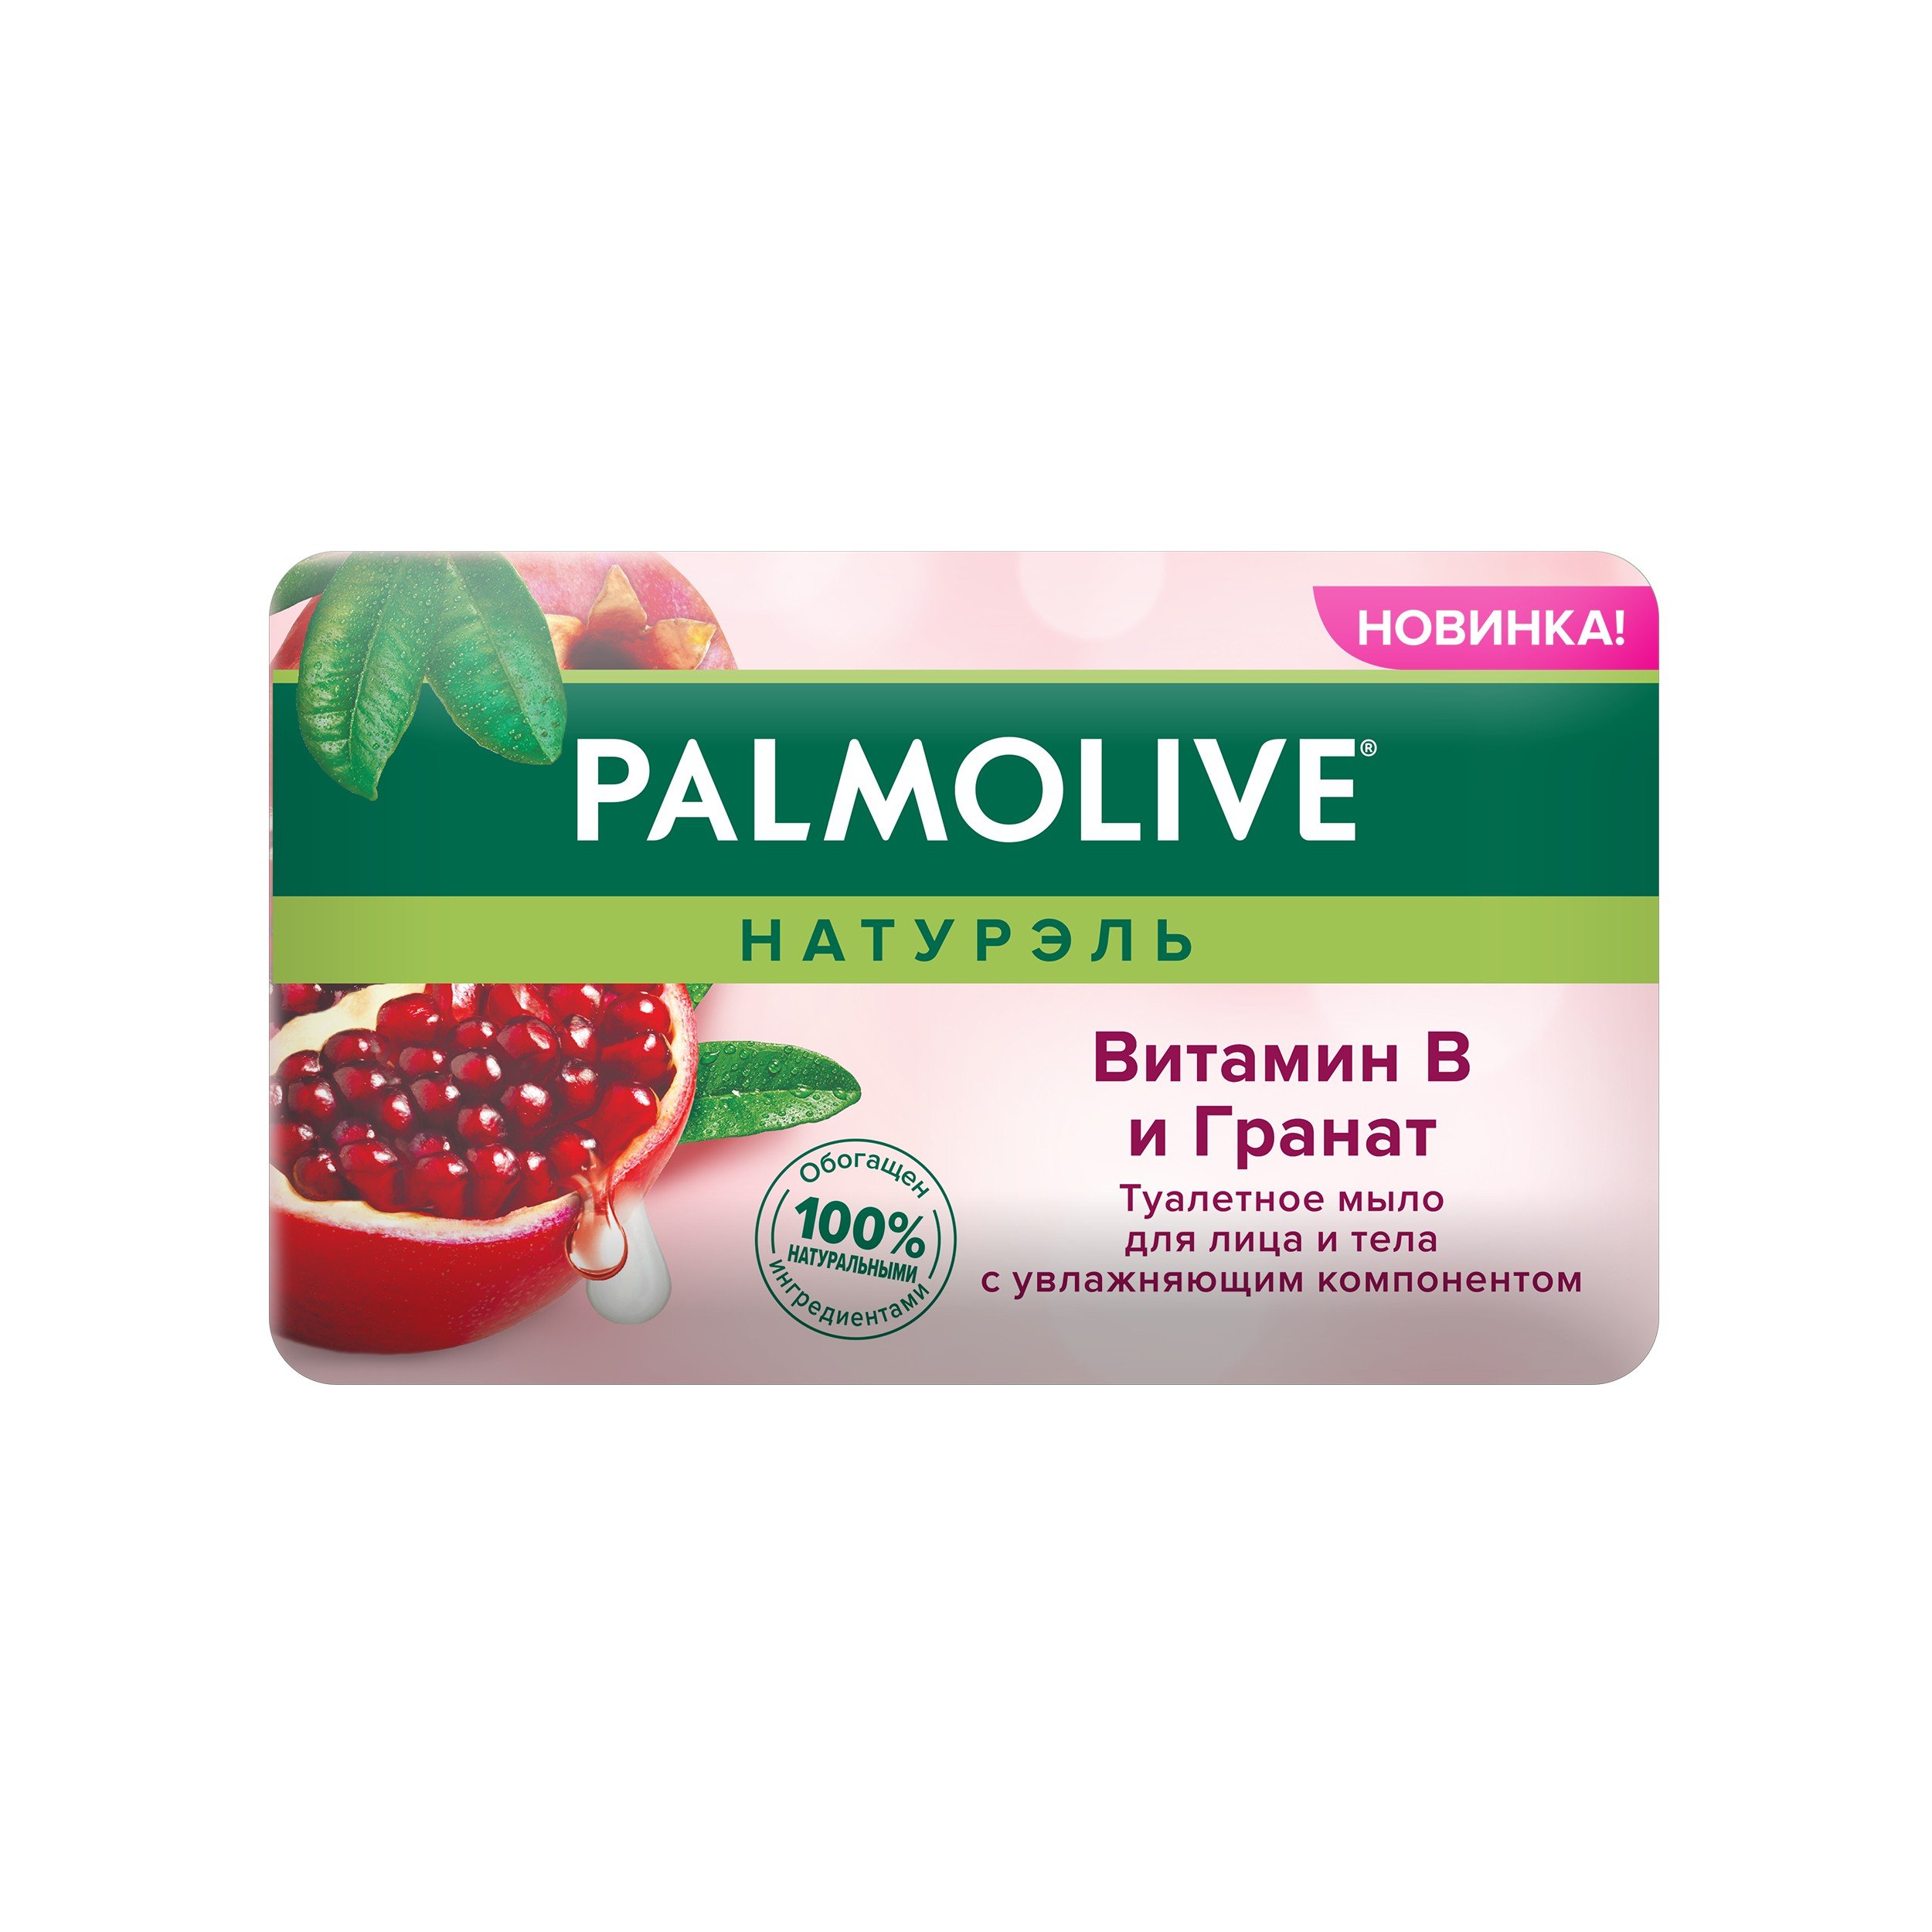 Мыло Palmolive Натурэль Витамин B и Гранат, 150 г - фото 2